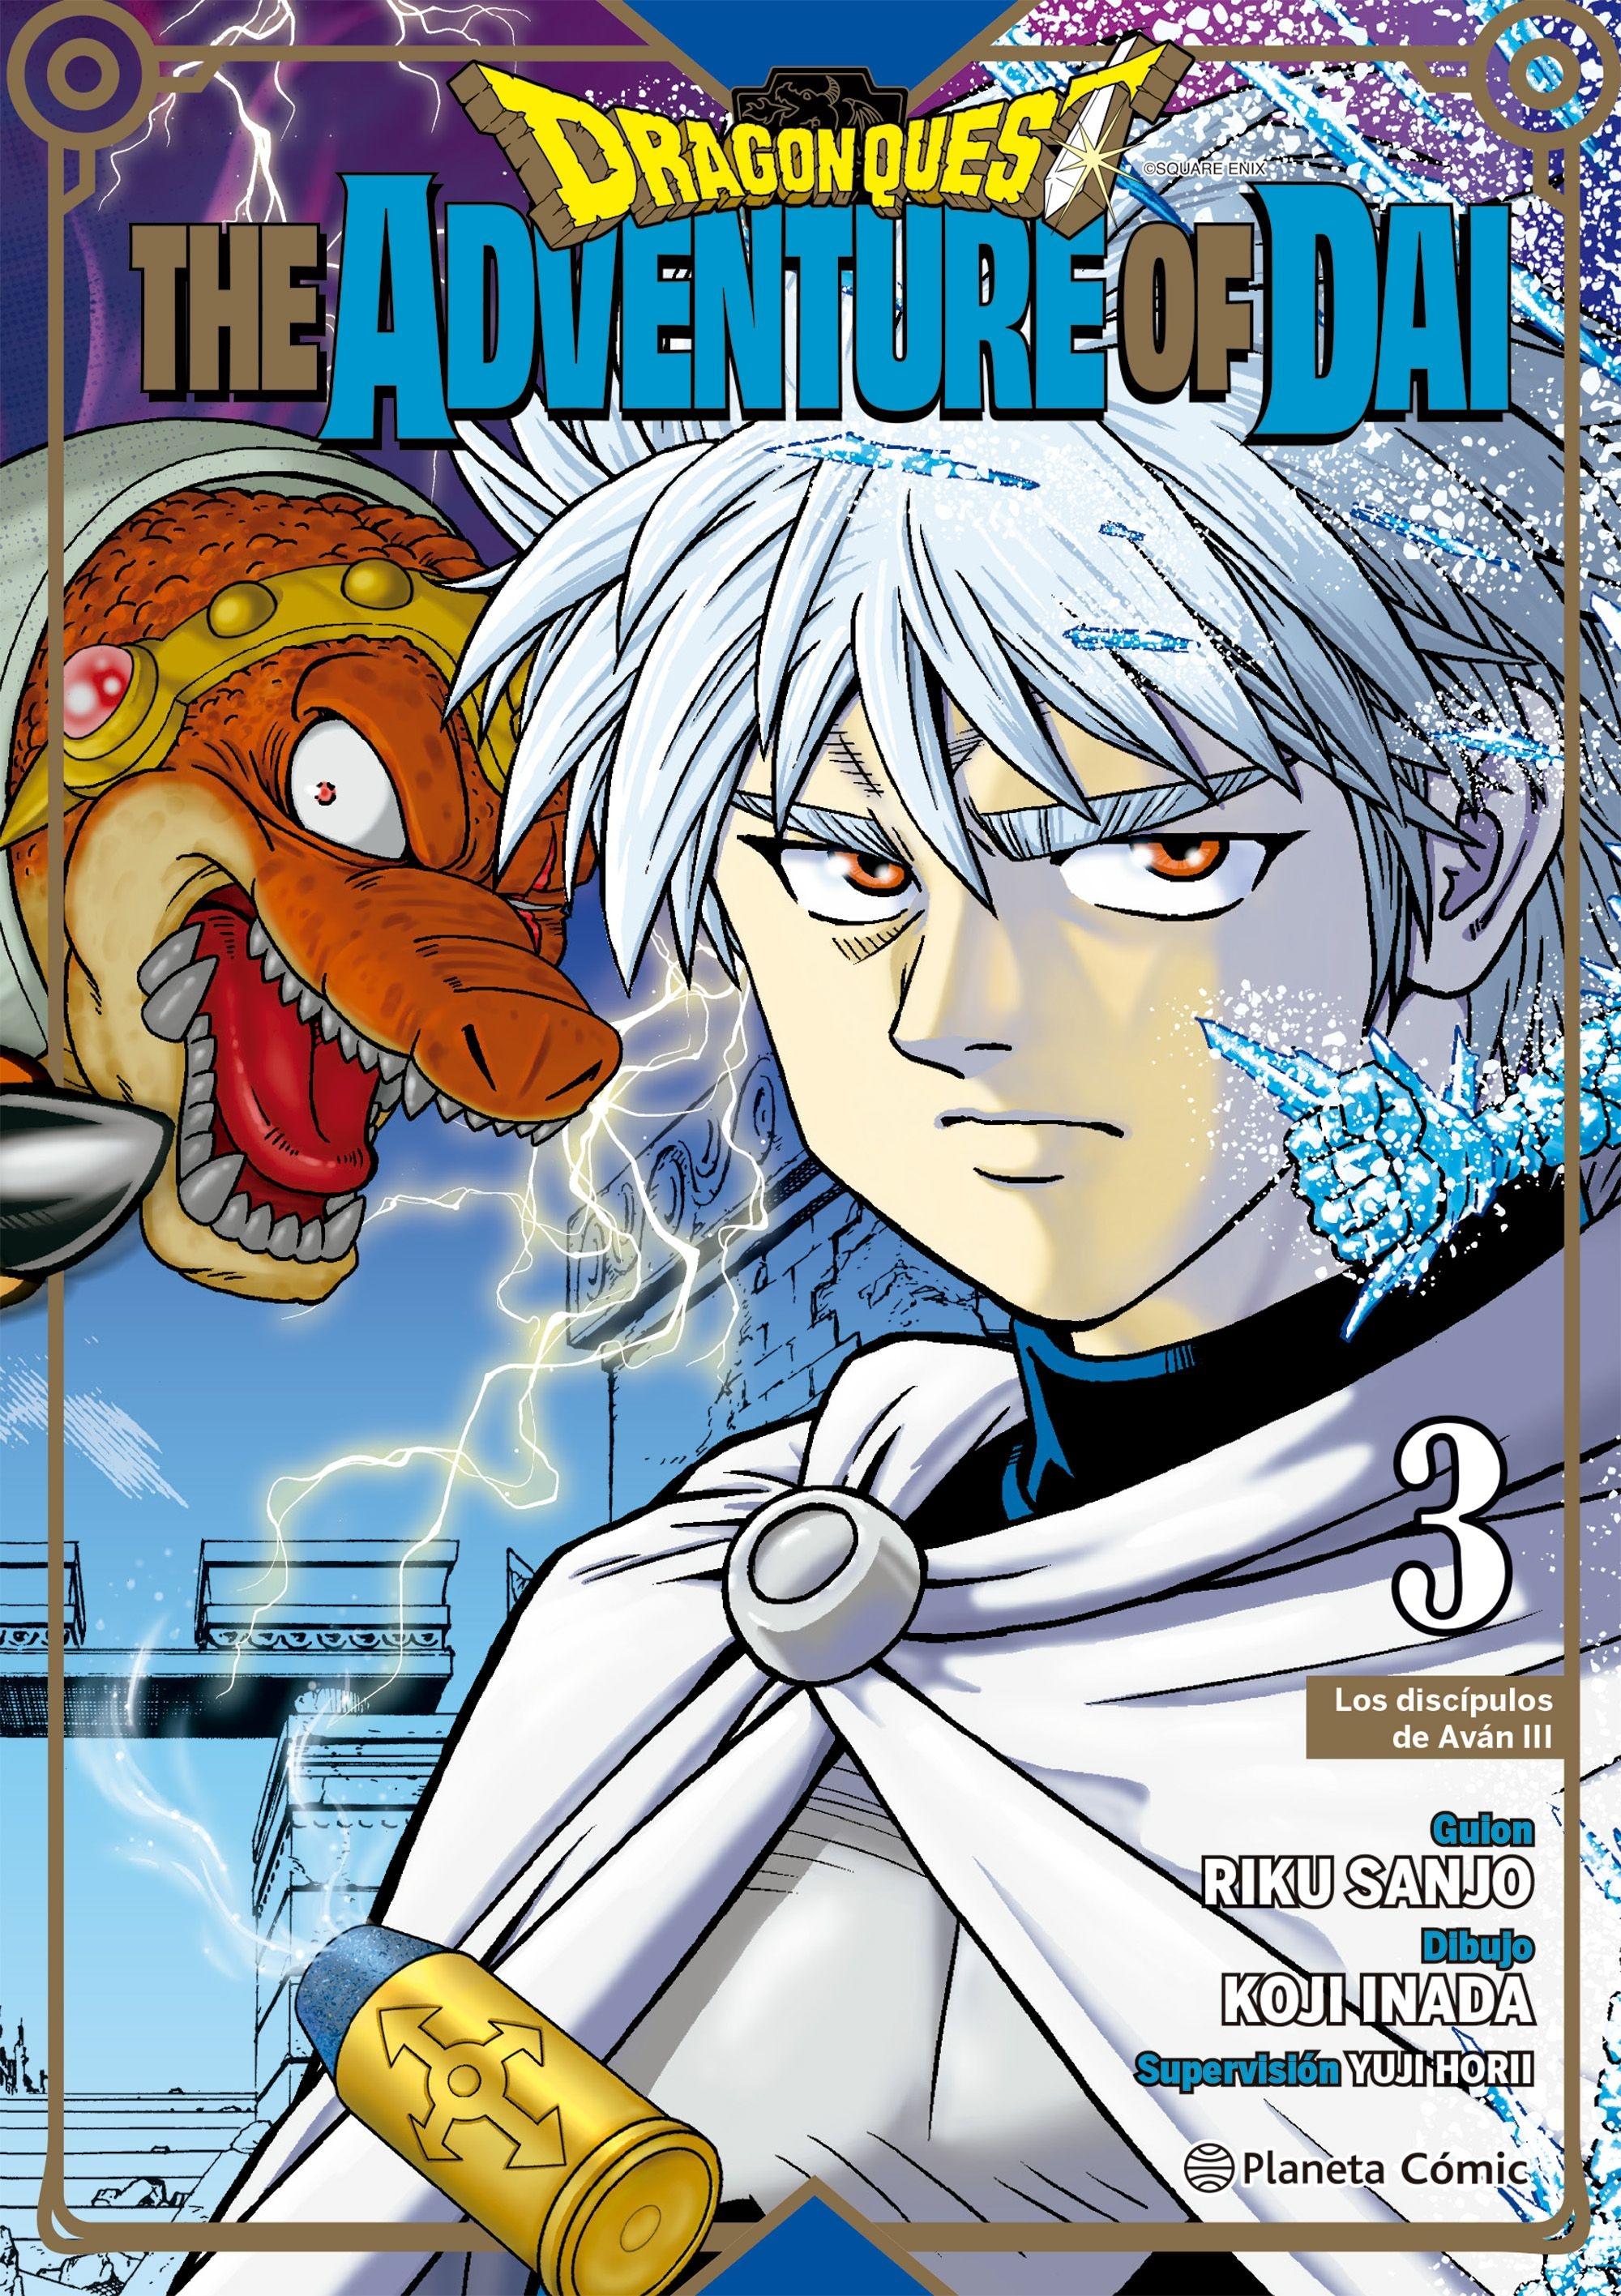 Dragon Quest The Adventure Of Dai Nº 03/25 "Los Discípulos de Aván Iii"